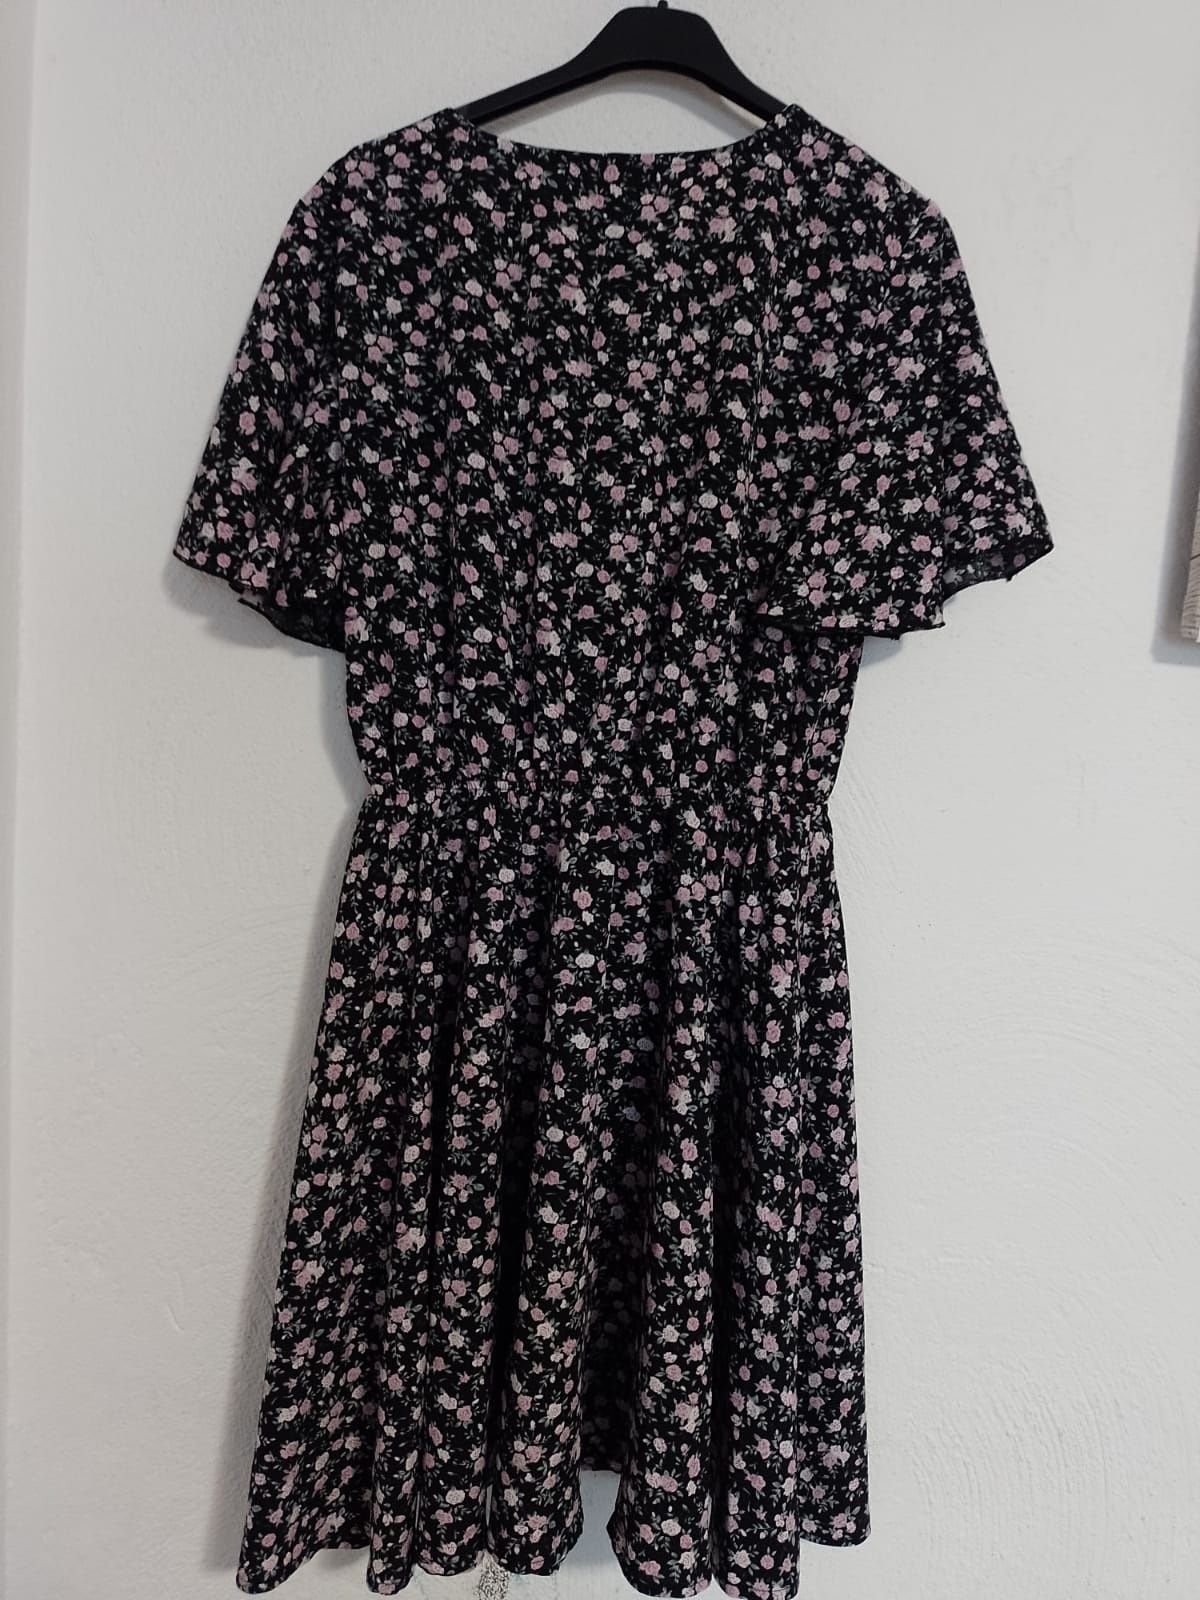 Sukienka w drobny print, rozm L/XL